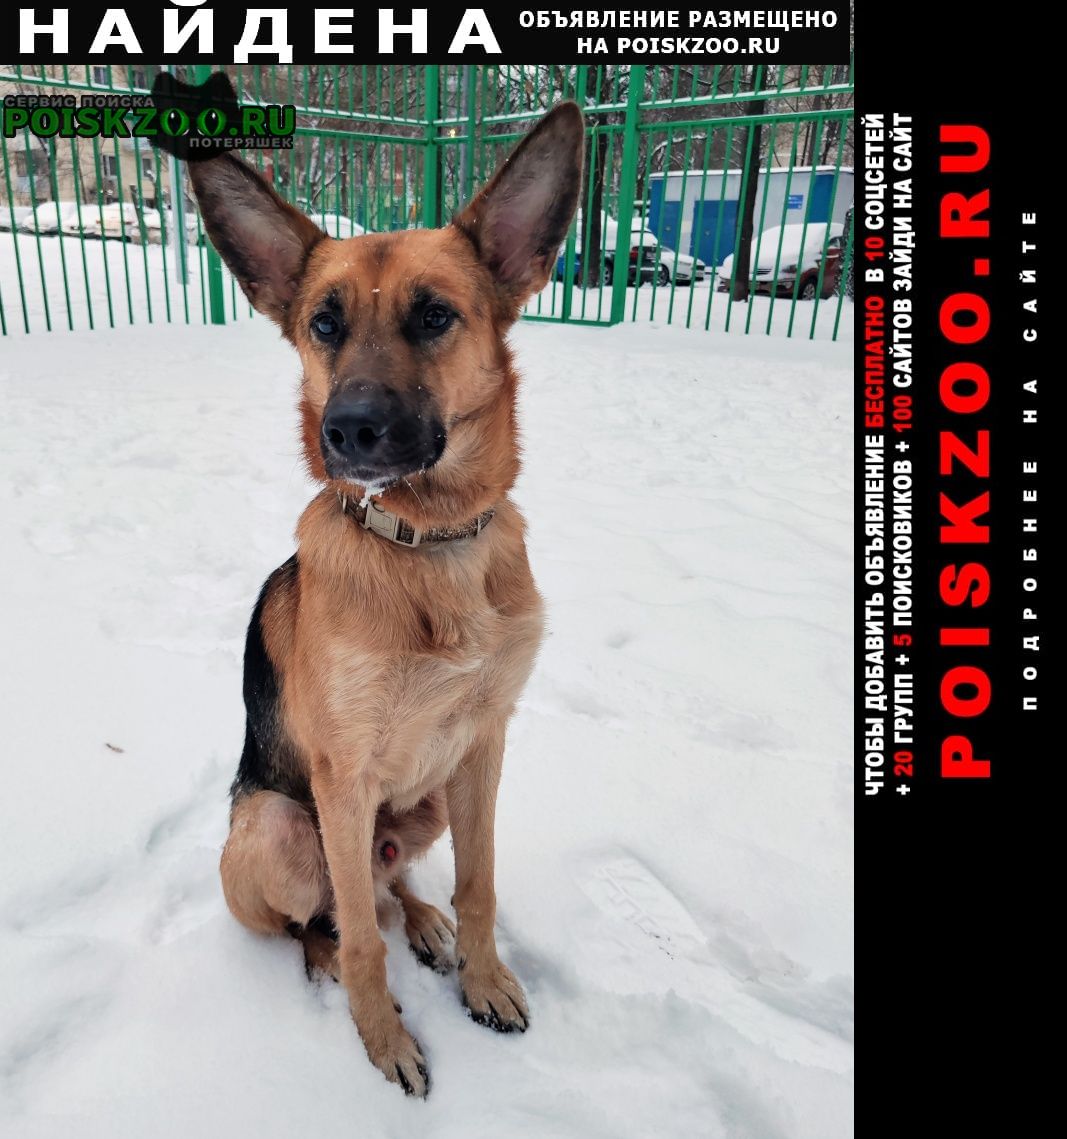 Найдена собака кобель молодой пёс в добрые руки. ищет семью Москва